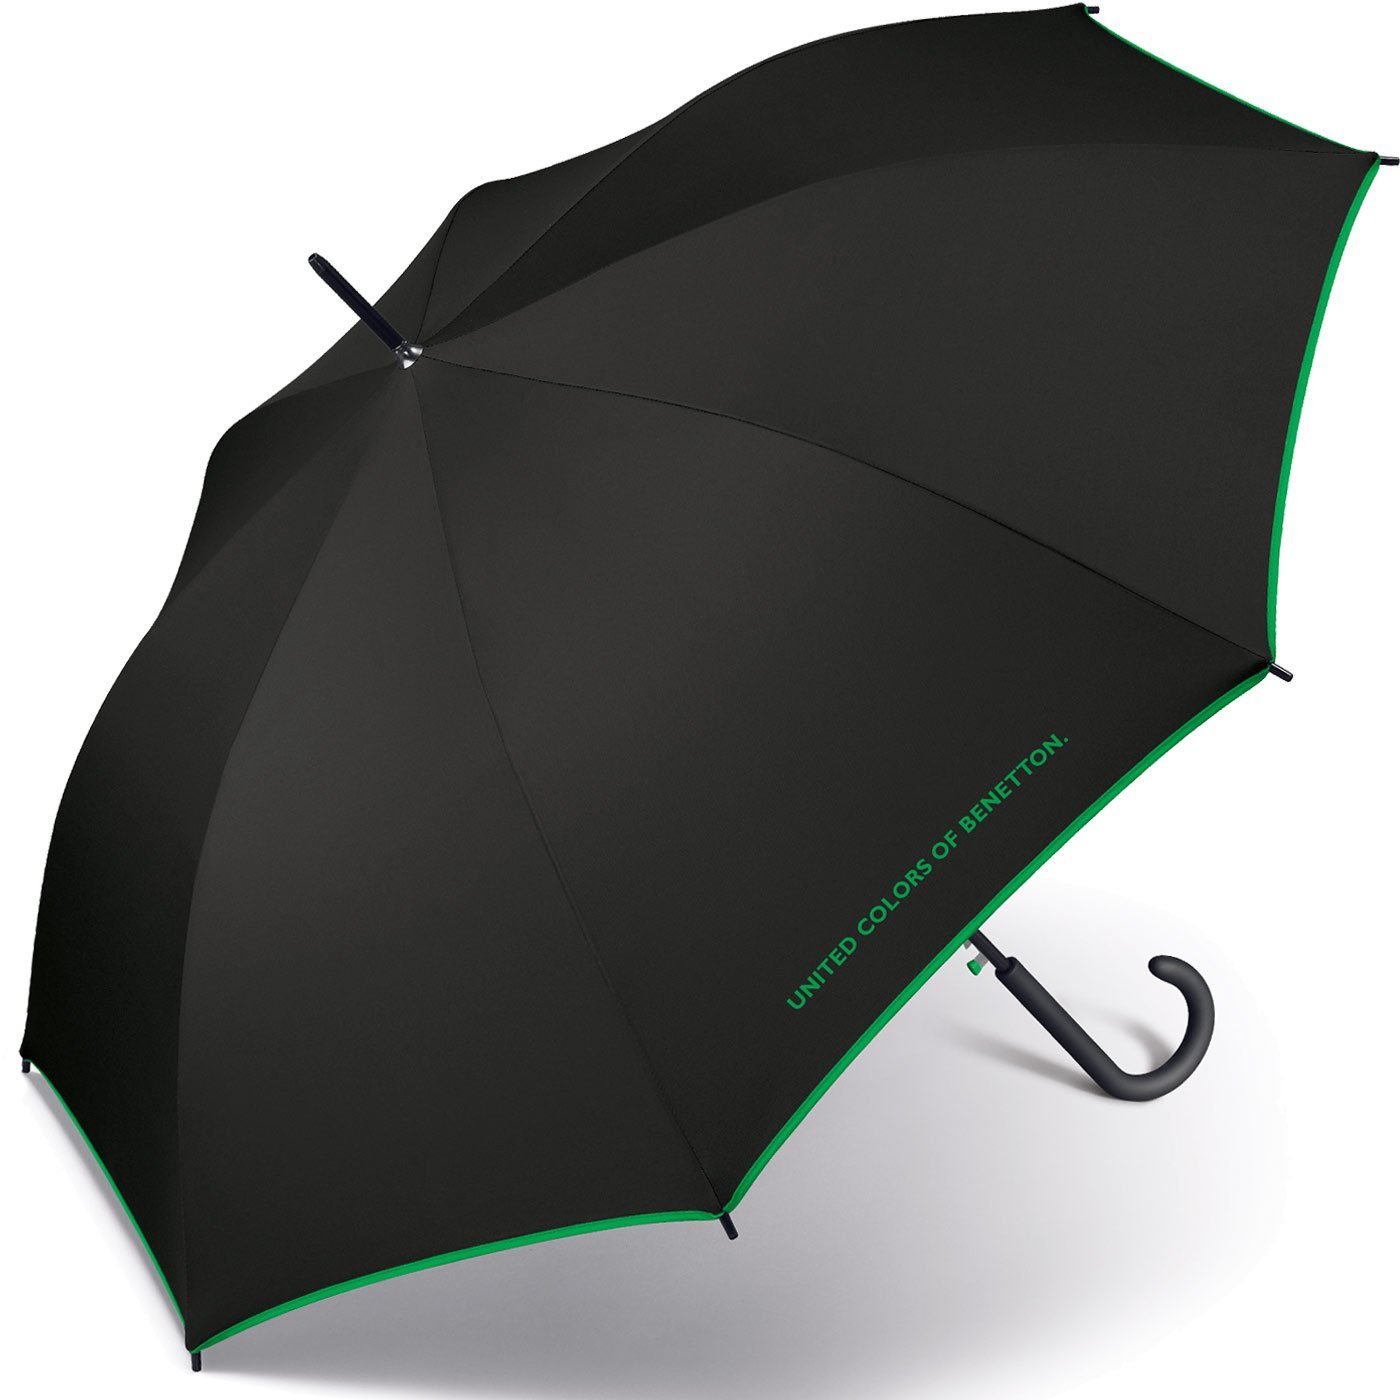 of großer Colors Auf-Automatik Regenschirm Langregenschirm United am Logo, mit Schirmrand mit Benetton Kontrastfarben schwarz und einfarbig